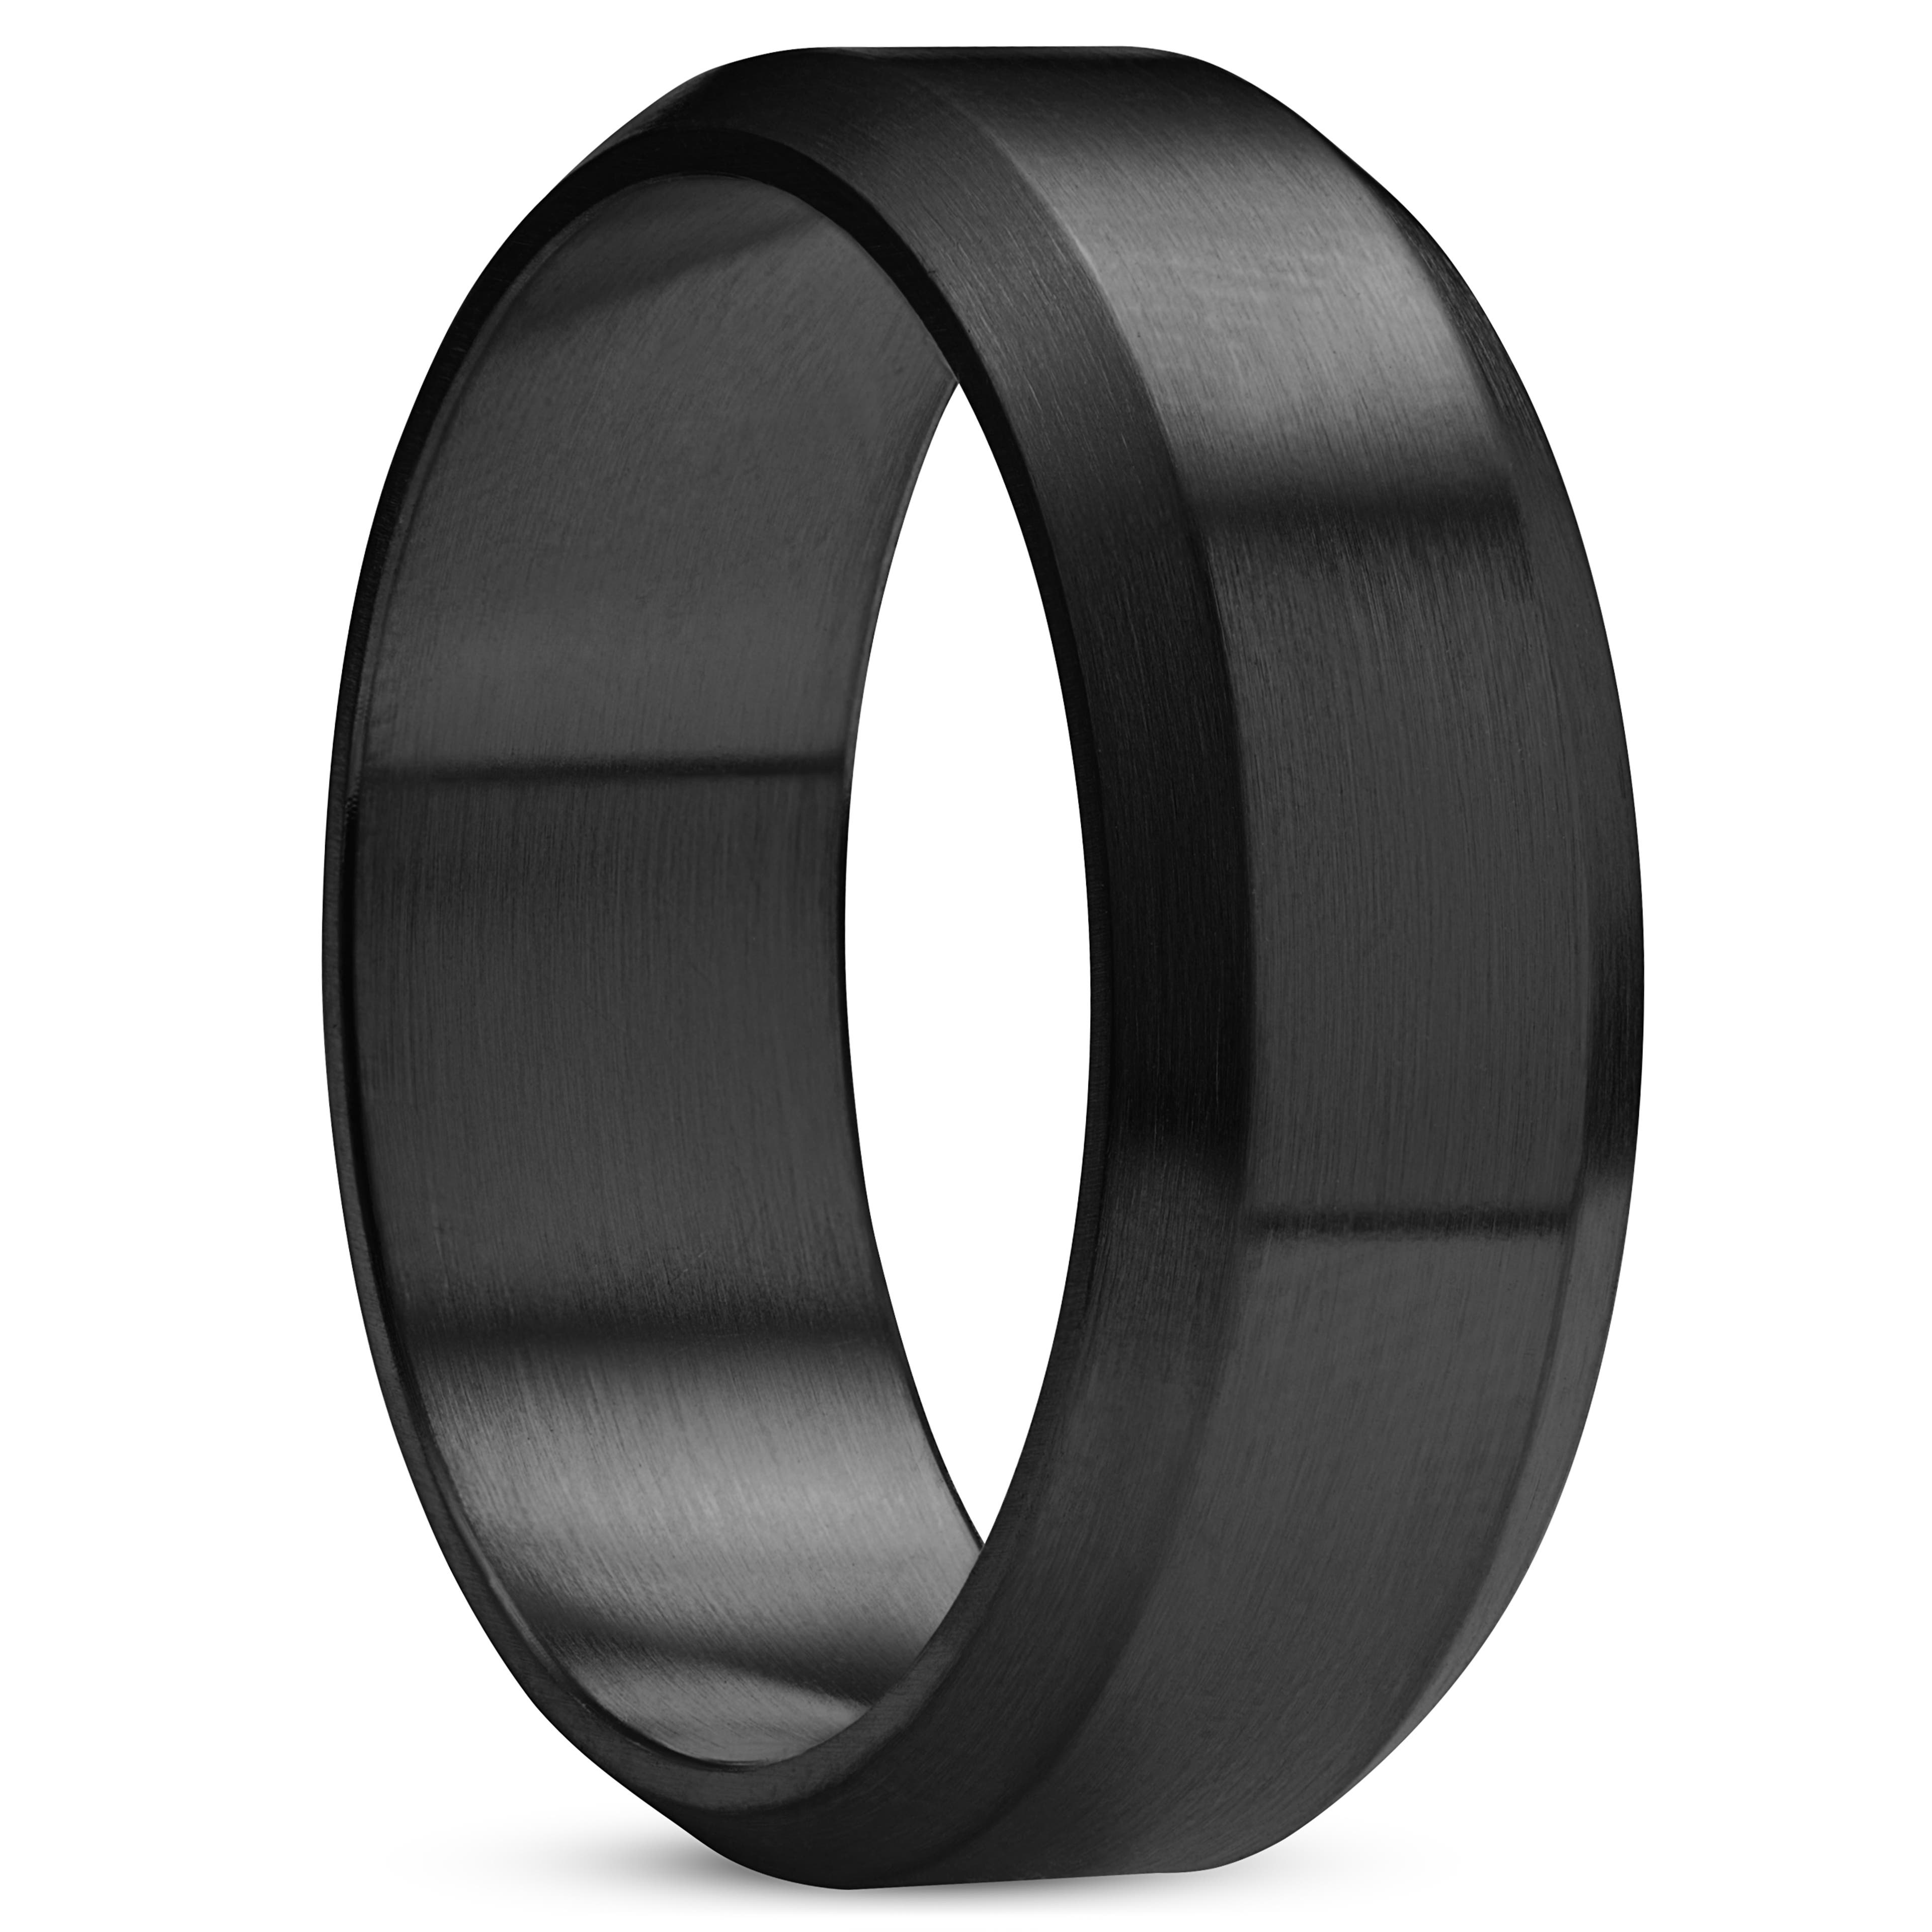 Ferrum | Anneau à bords biseautés en acier inoxydable noir brossé - 8 mm